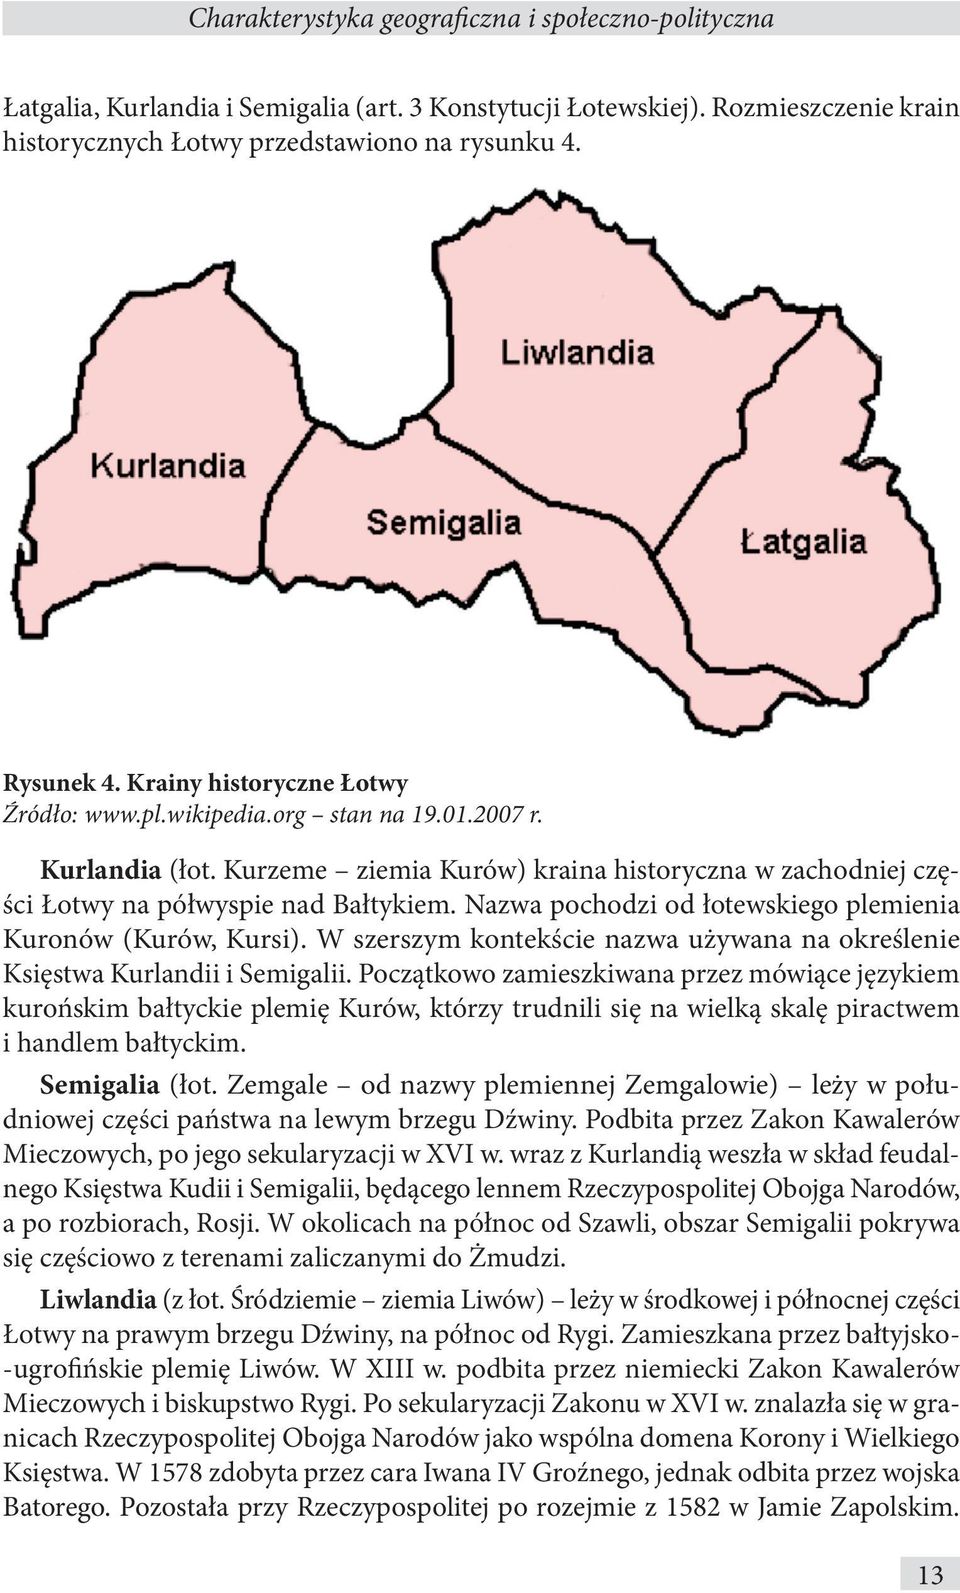 Nazwa pochodzi od łotewskiego plemienia Kuronów (Kurów, Kursi). W szerszym kontekście nazwa używana na określenie Księstwa Kurlandii i Semigalii.